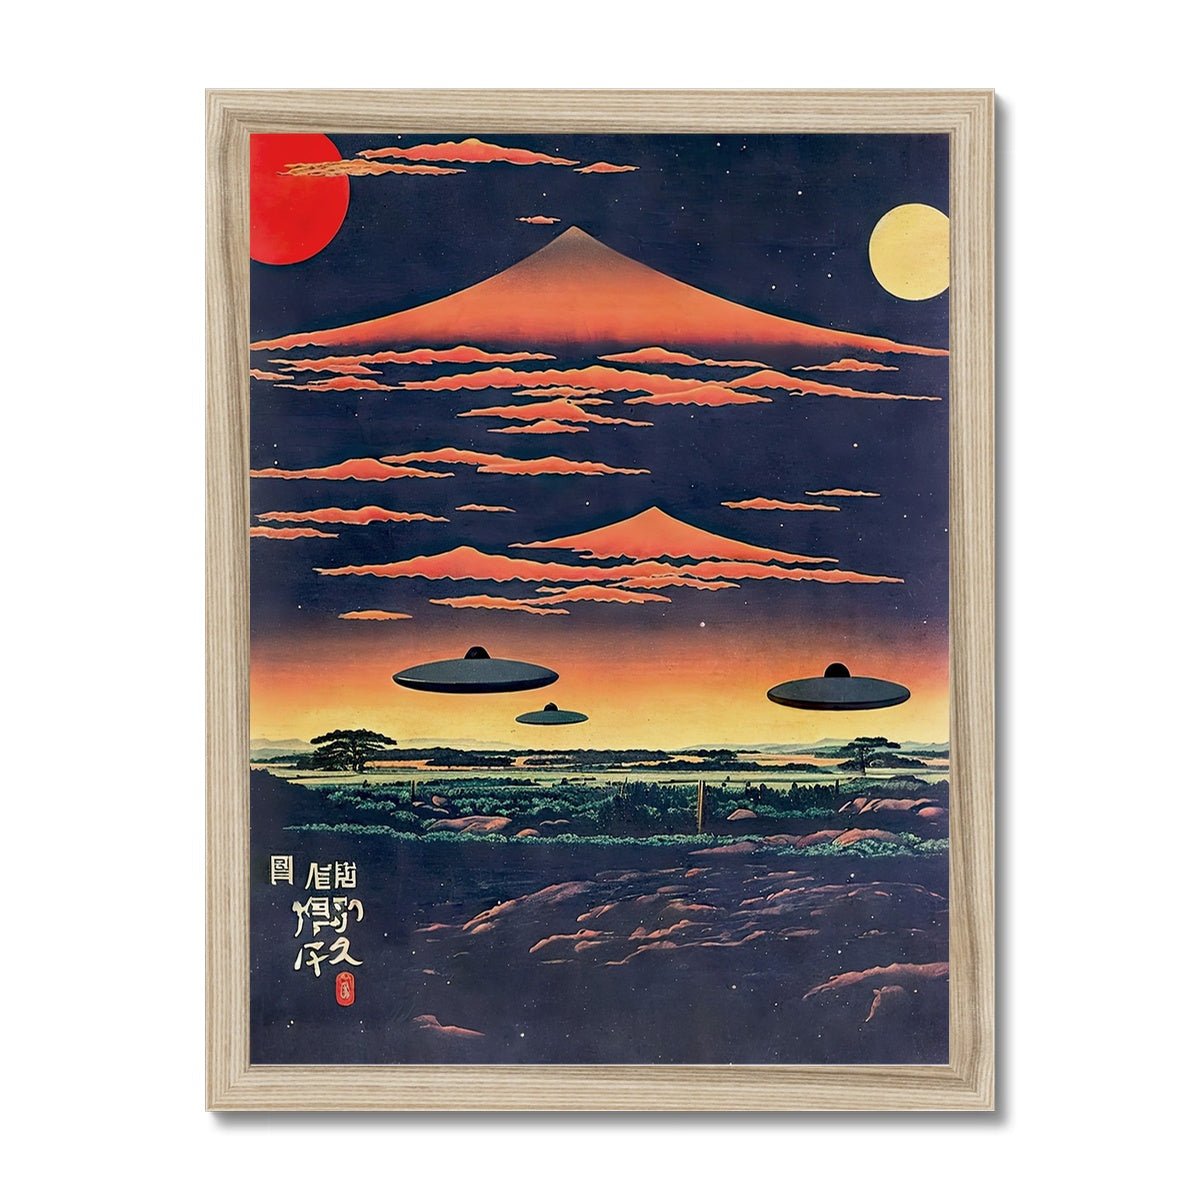 Fine art 6"x8" / Natural Frame Extraterrestrial Japanese Art | UFO Space ET Aliens, 宇宙人 Japanese Surrealism, Original Vintage Fantasy Framed Art Print